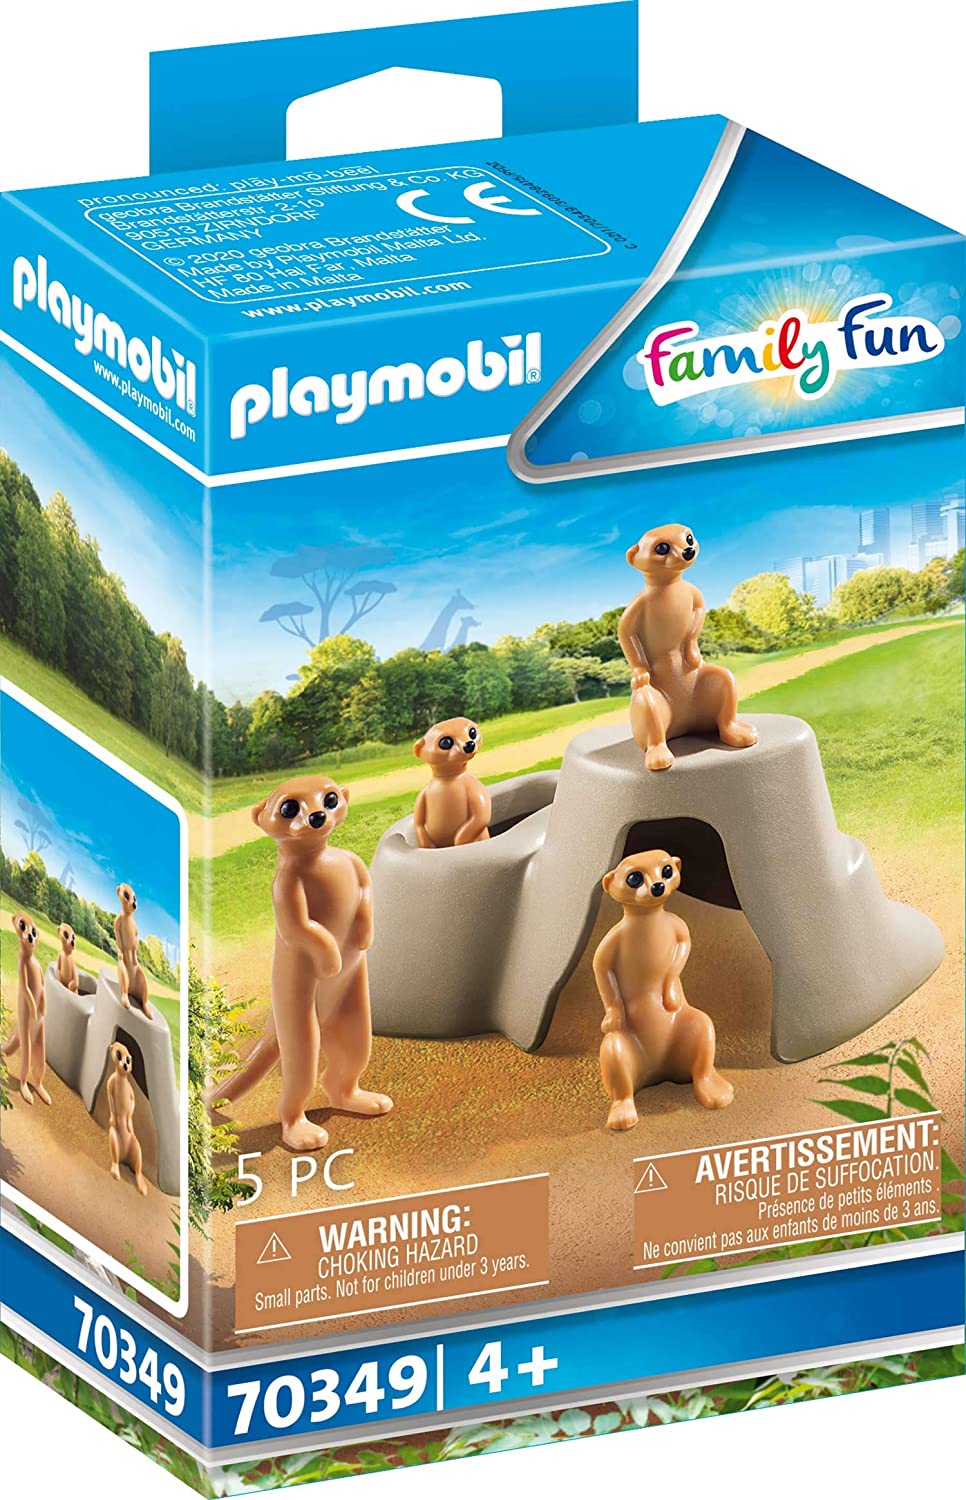 Playmobil 70349 Fun Family Suricates